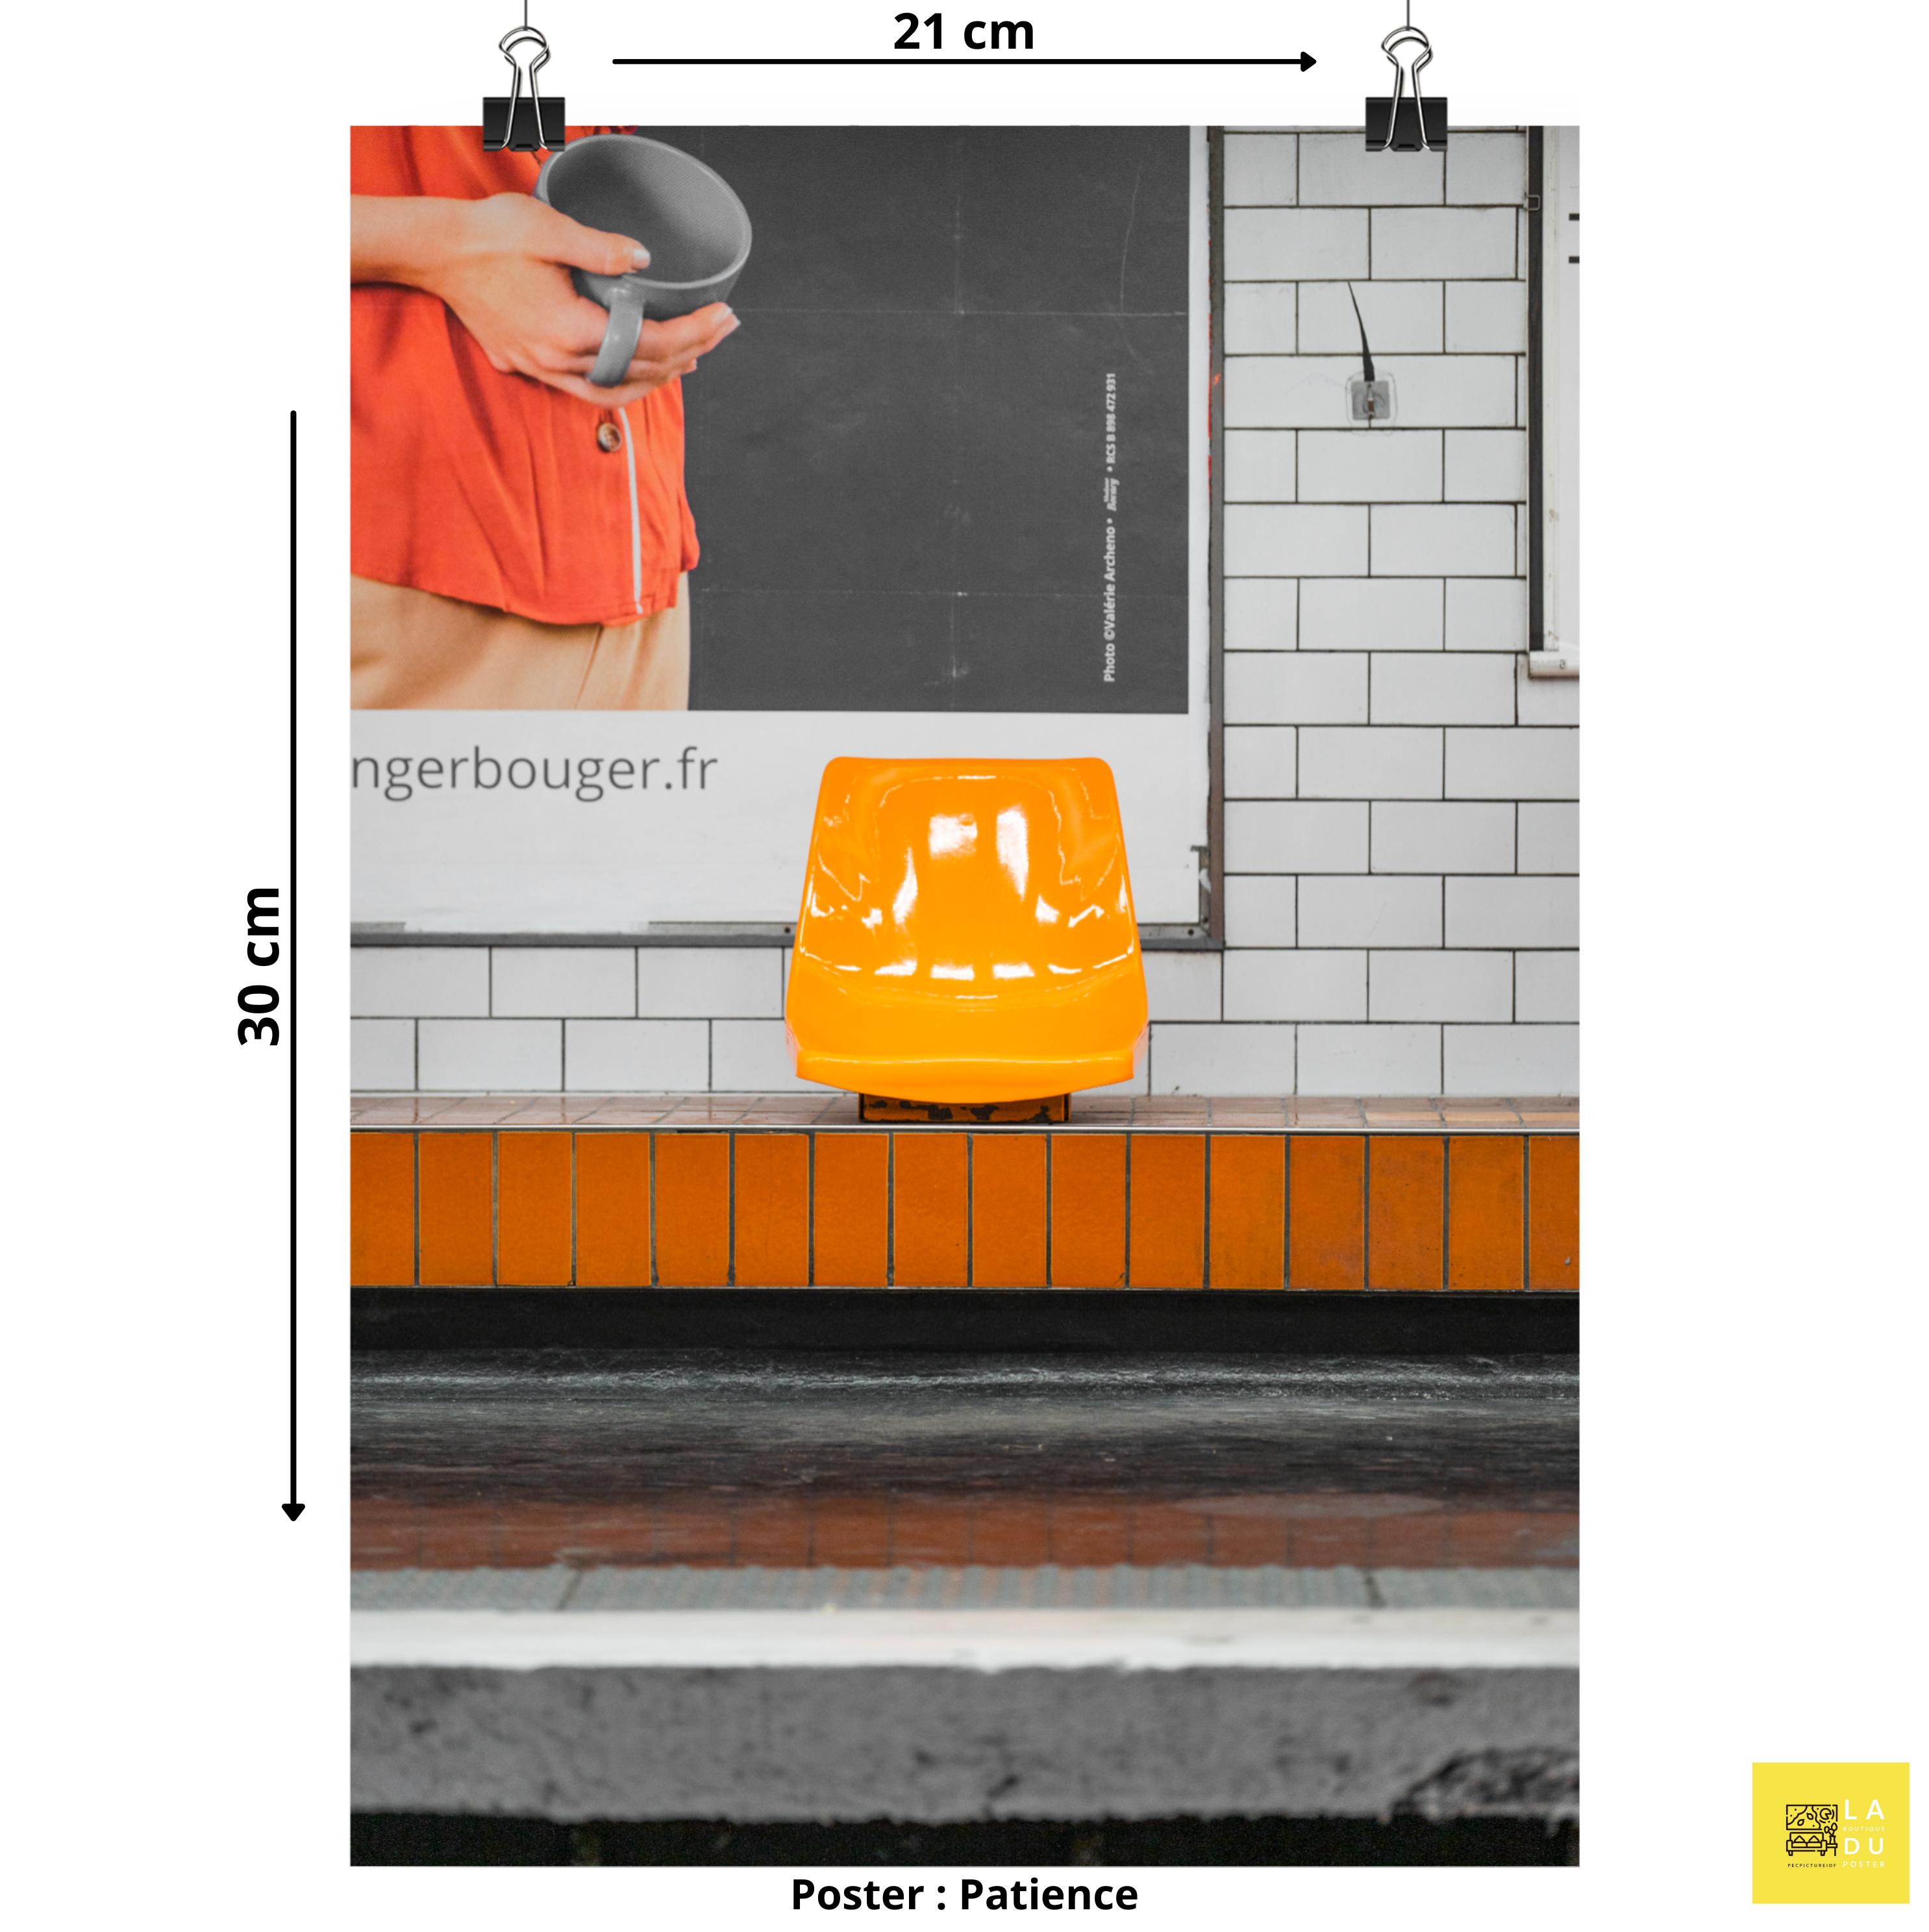 Siège orange du métro parisien - Poster - La boutique du poster Français